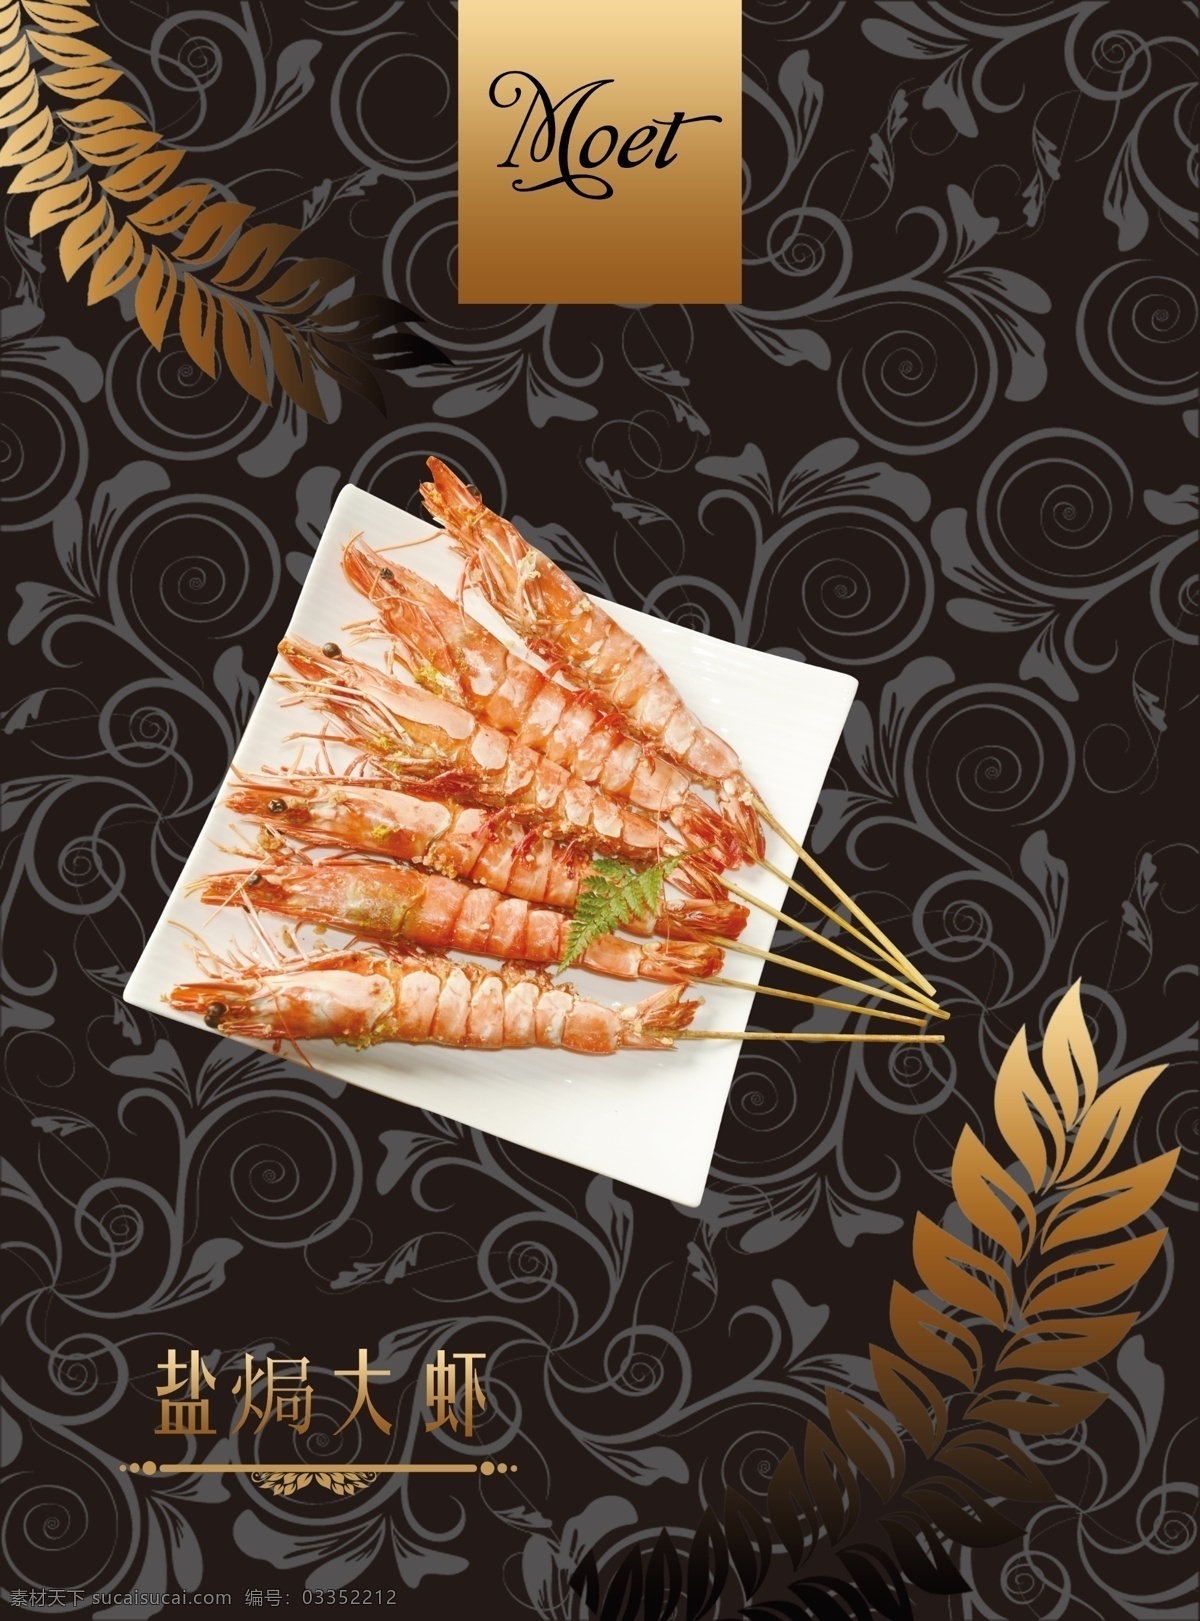 盐焗大虾 西餐厅 菜单 菜谱 西餐 餐厅 分层